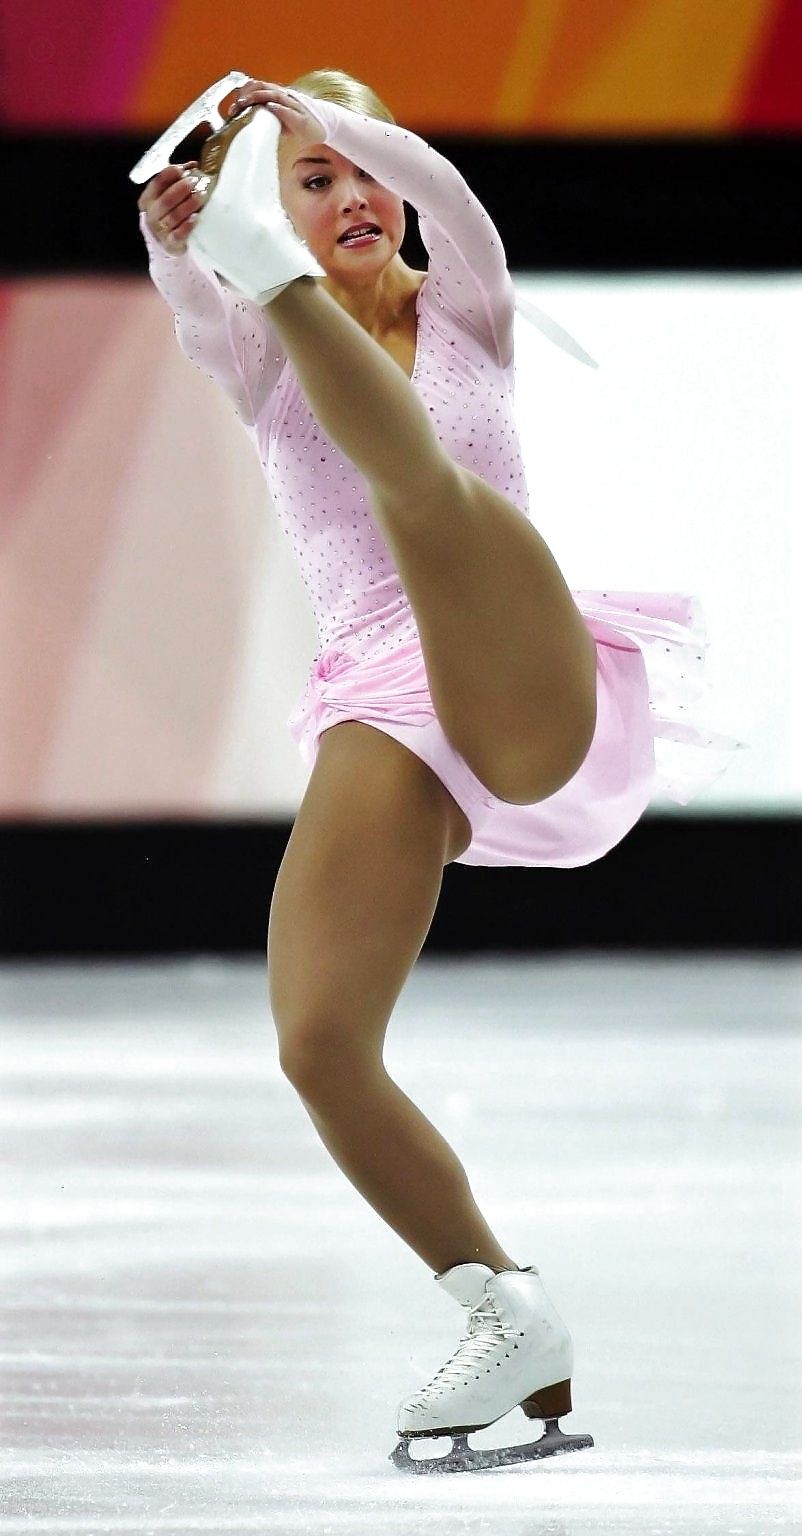 Kiira Korpi - hot figure skater.